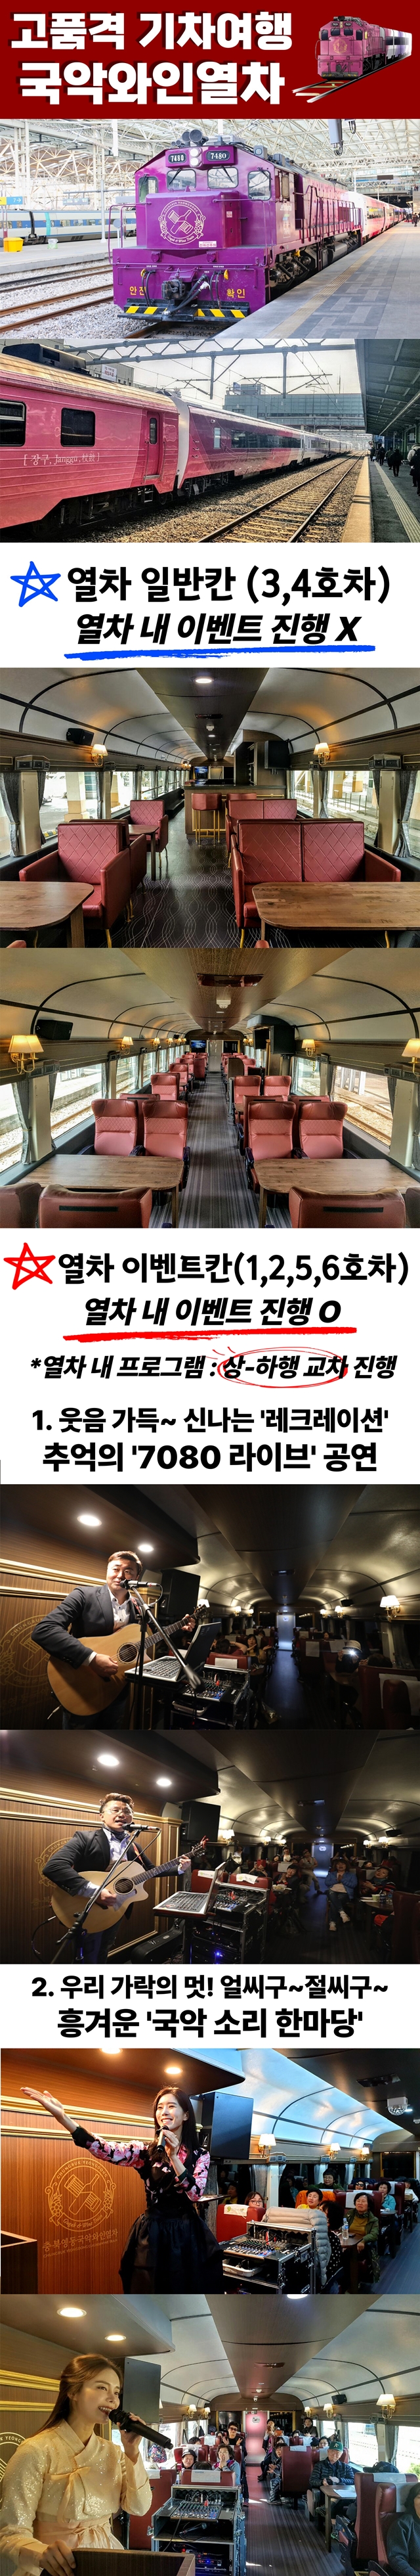 국악와인열차 (홈페이지).jpg